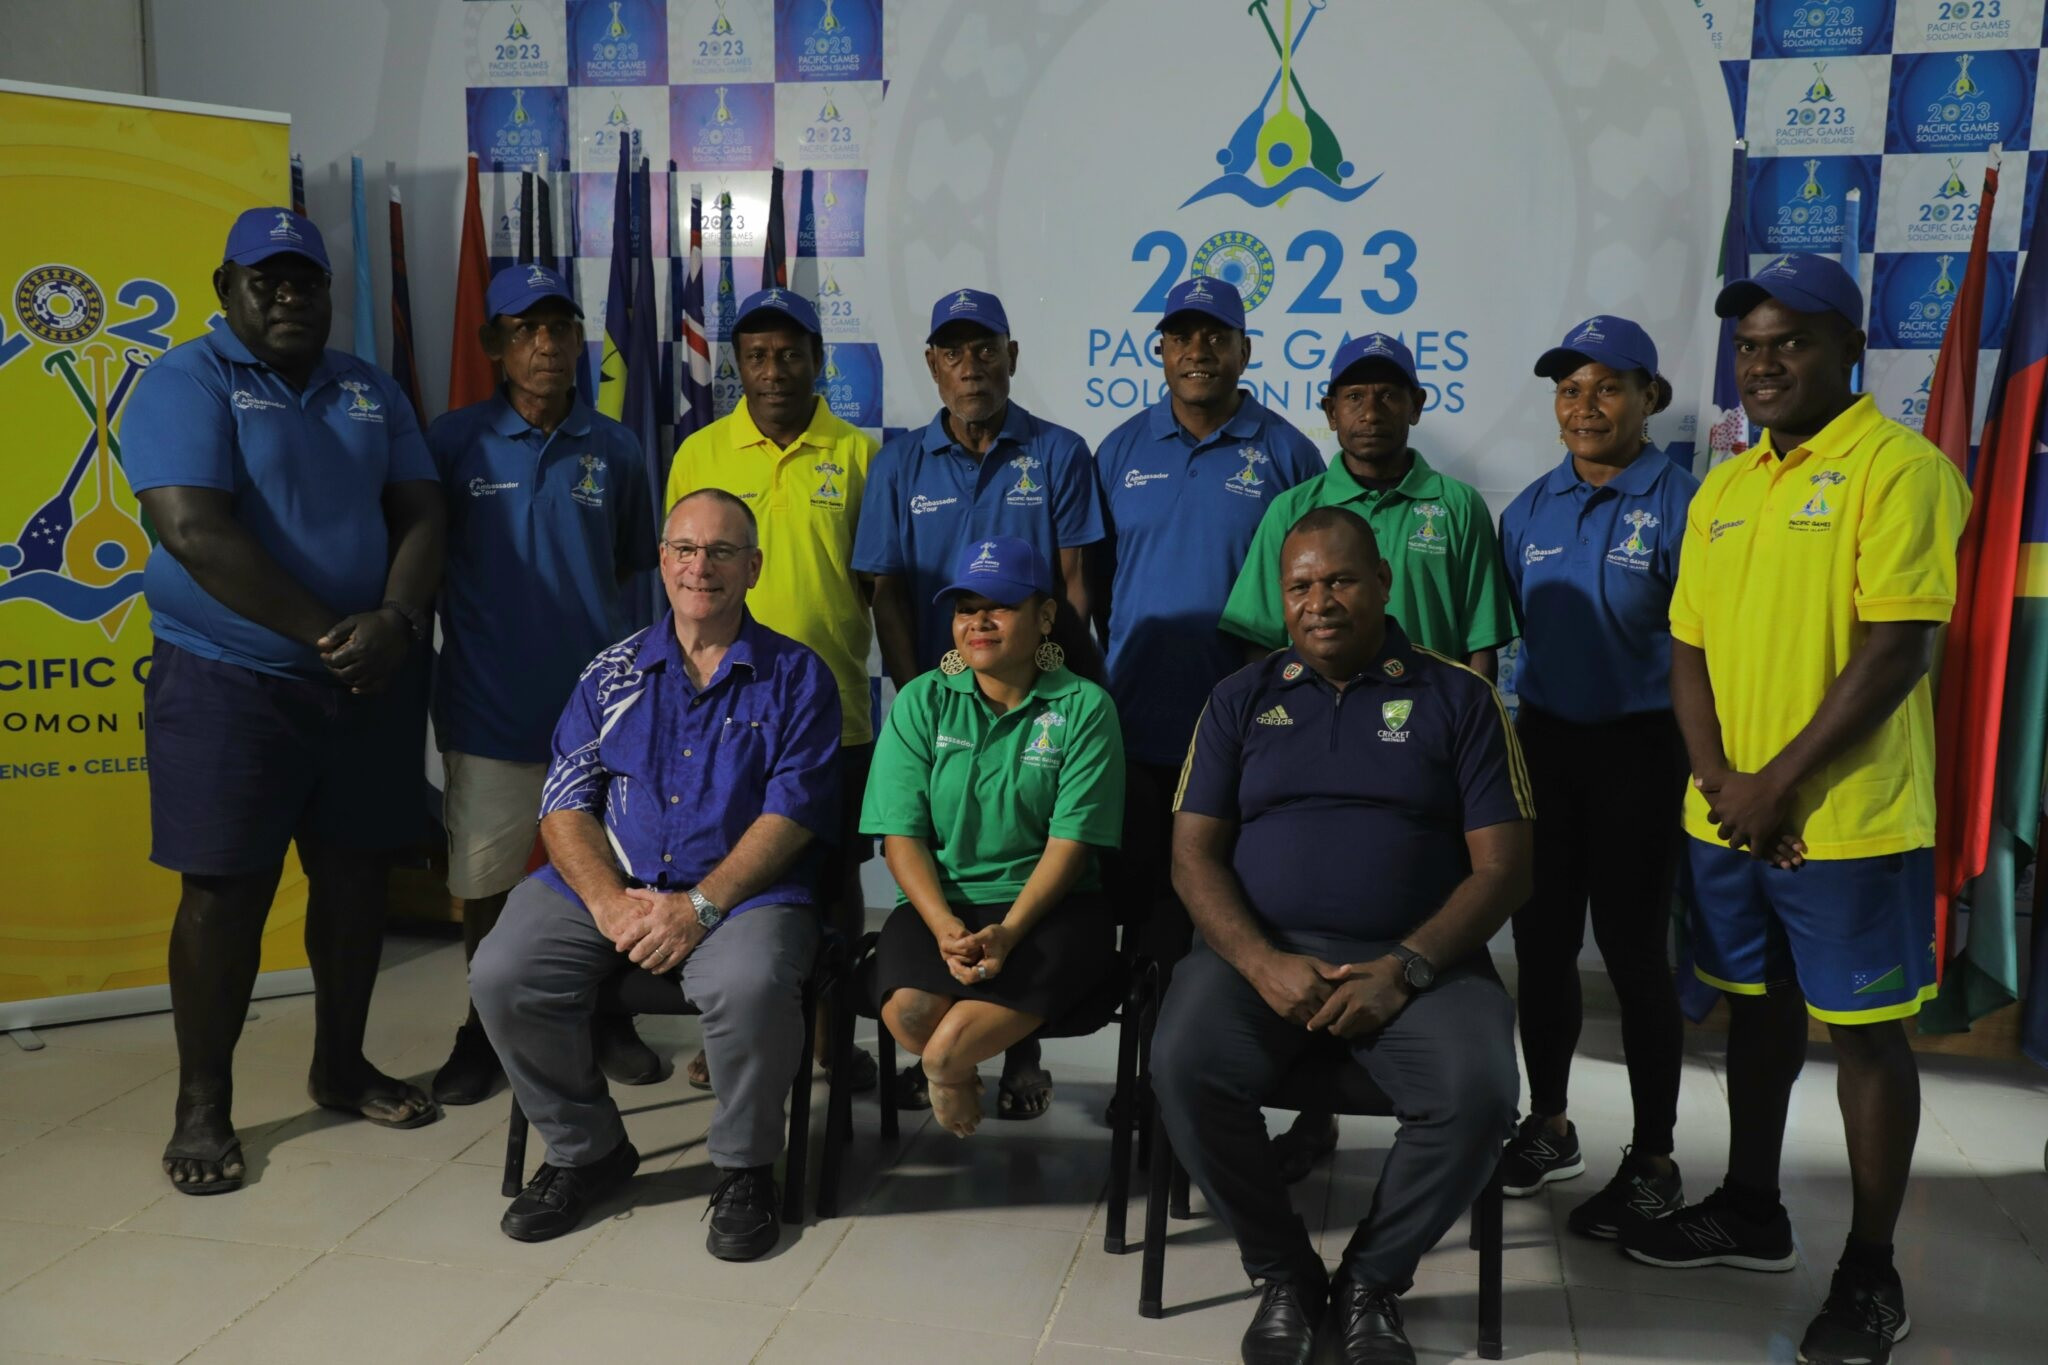 Wini and Saohaga among nine ambassadors for Solomon Islands 2023 Pacific Games